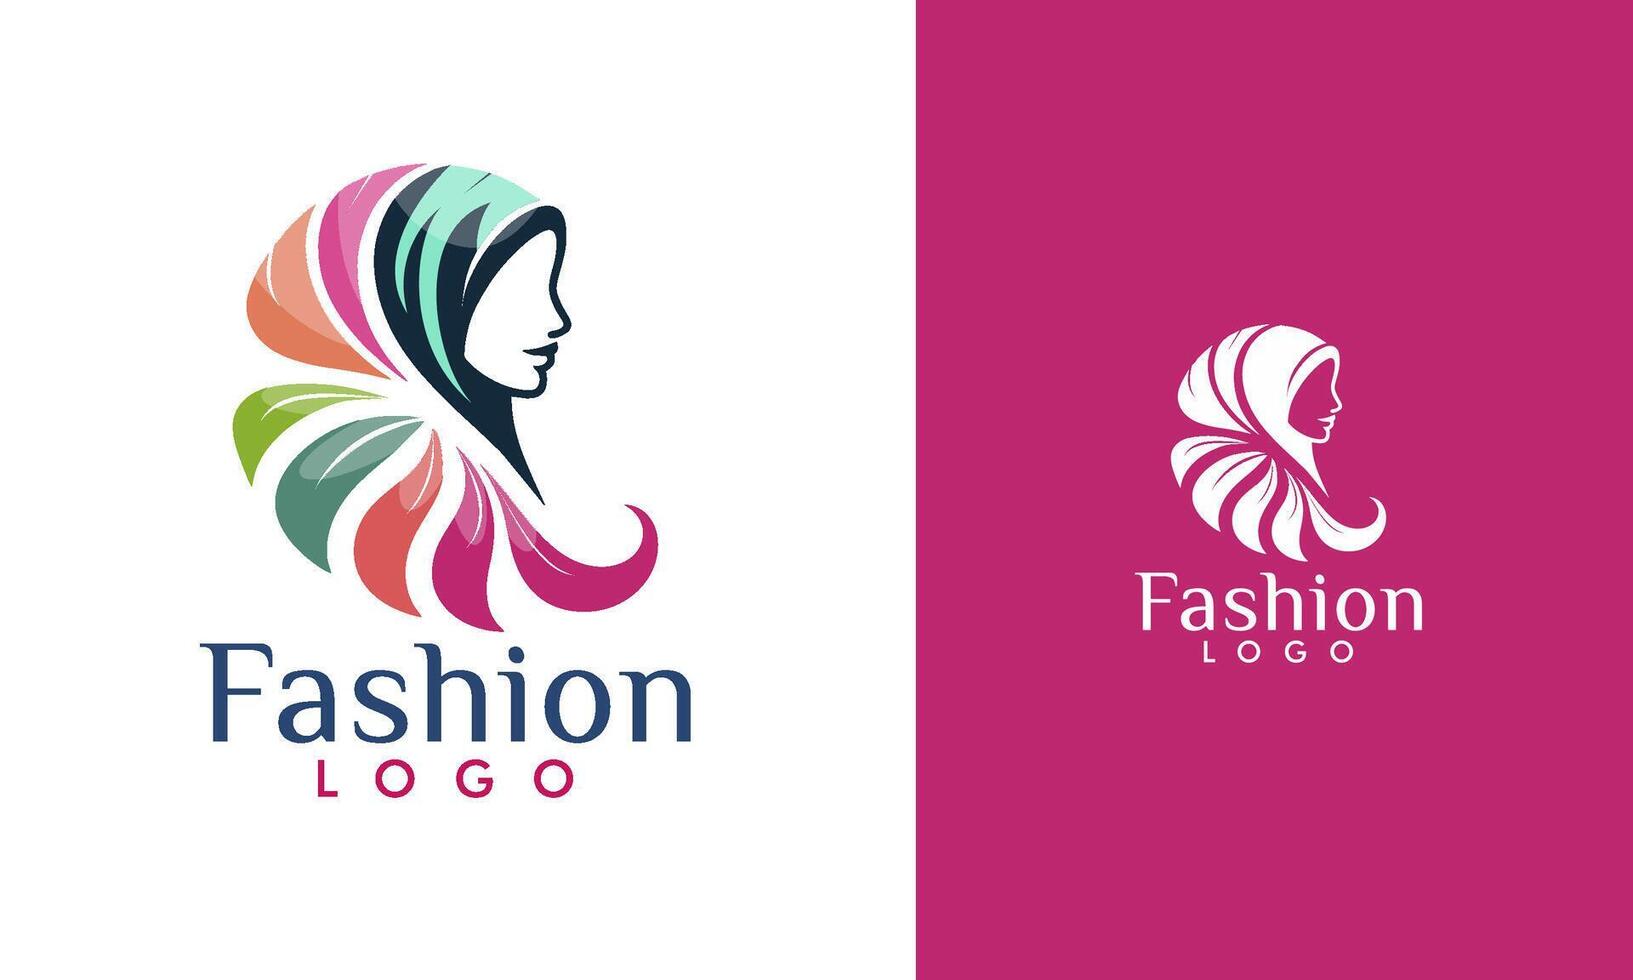 muçulmano roupas logotipo, hijab logotipo vetor